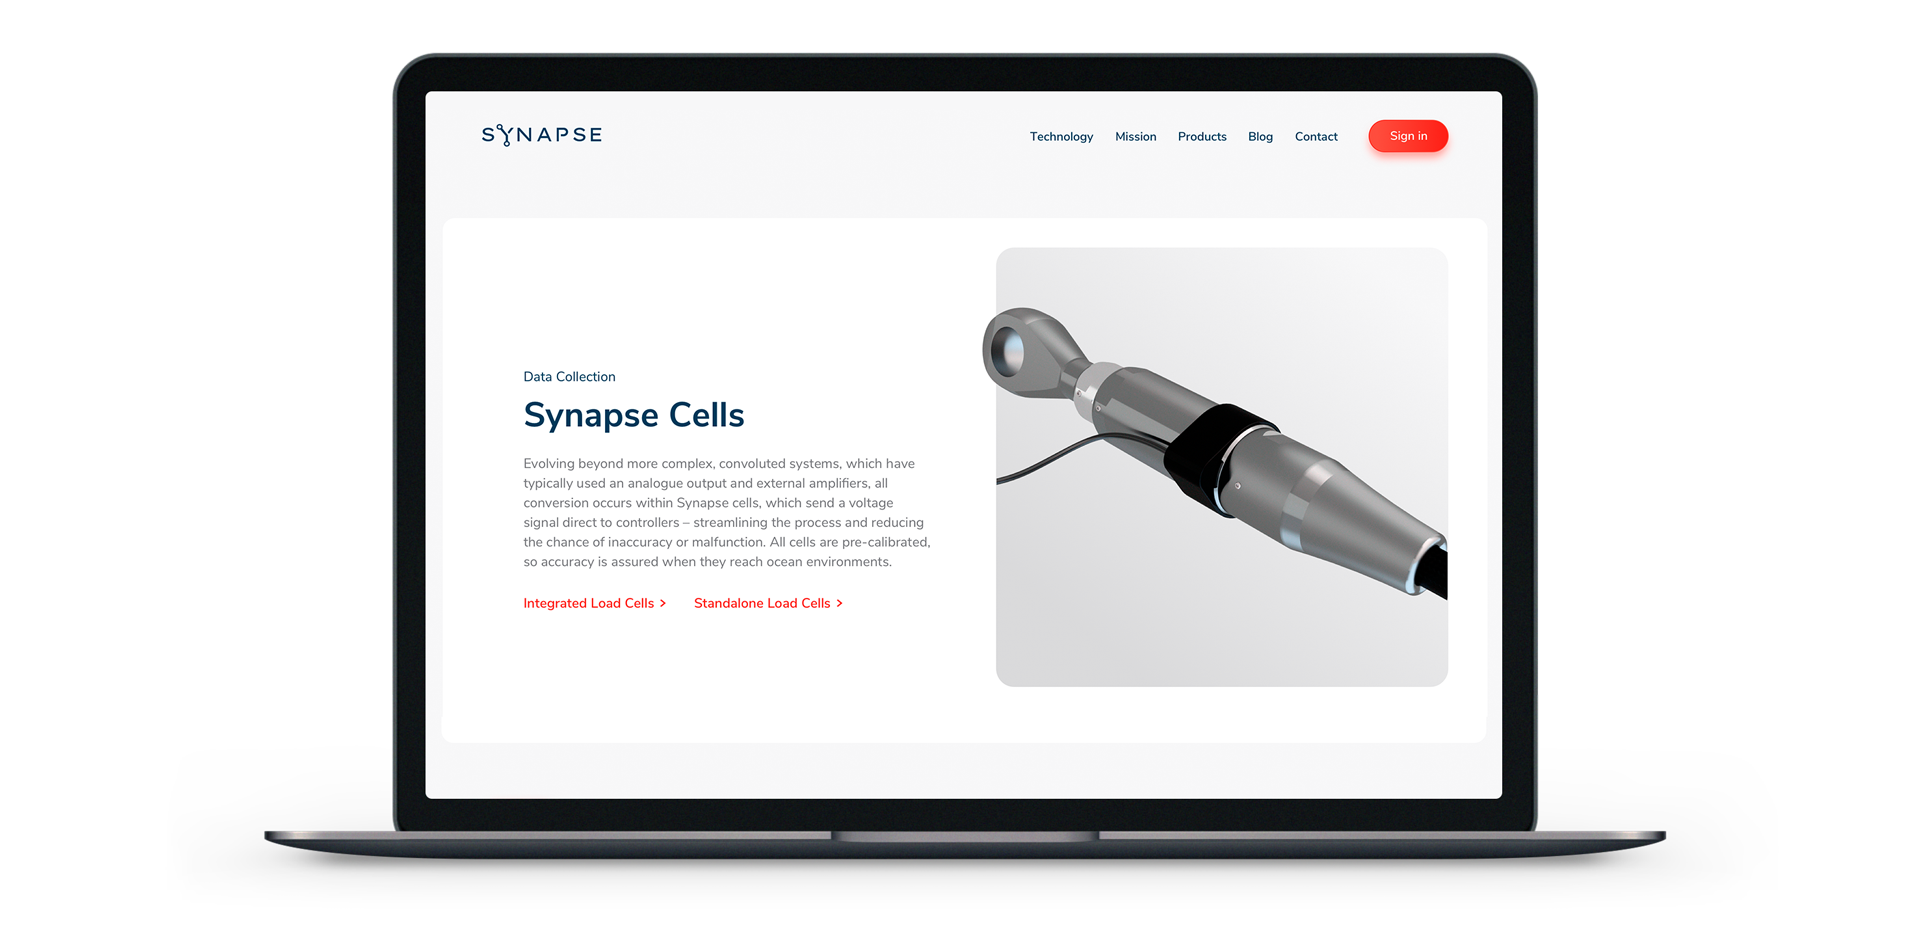 Lanzamos la nueva web de Synapse, desarrollo de productos de innovación referentes en la industria marina